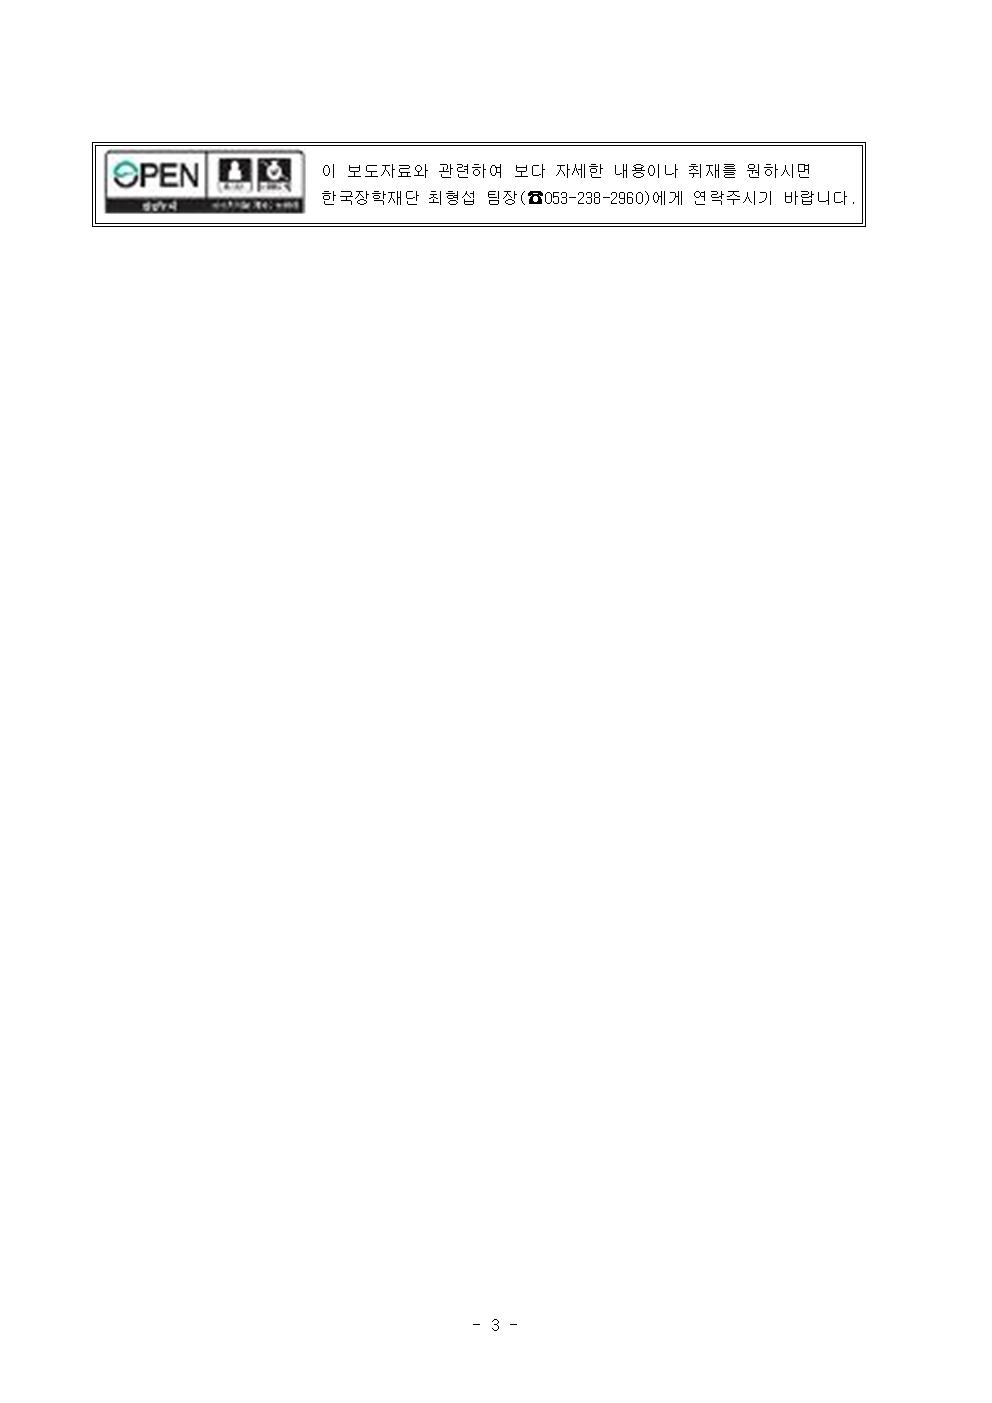 11-20(수)[보도자료] 한국장학재단, 대통령과학장학생 증서 수여식 개최003.jpg